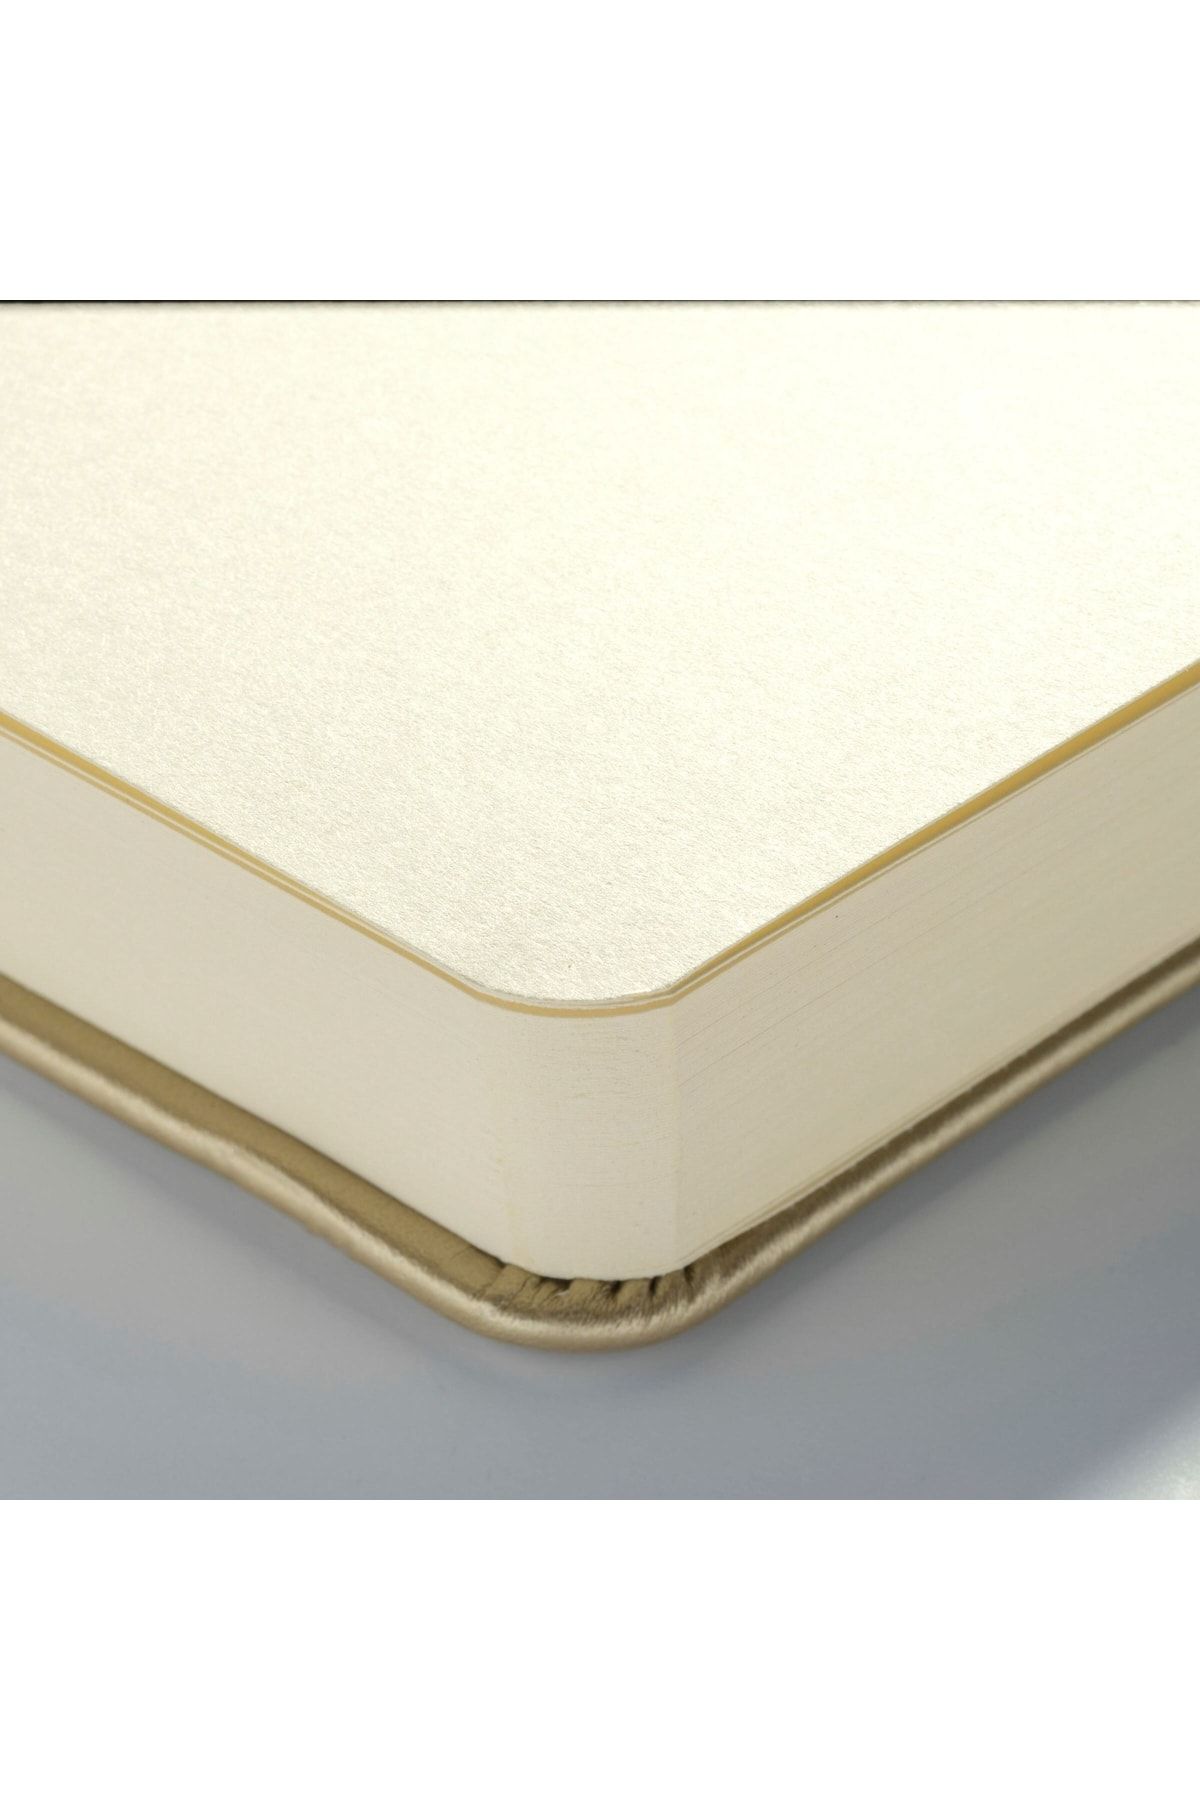 Royal Talens Sketchbook White Gold 21 X 14.8 Cm 140 G 80 Yaprak Fiyatı,  Yorumları - Trendyol